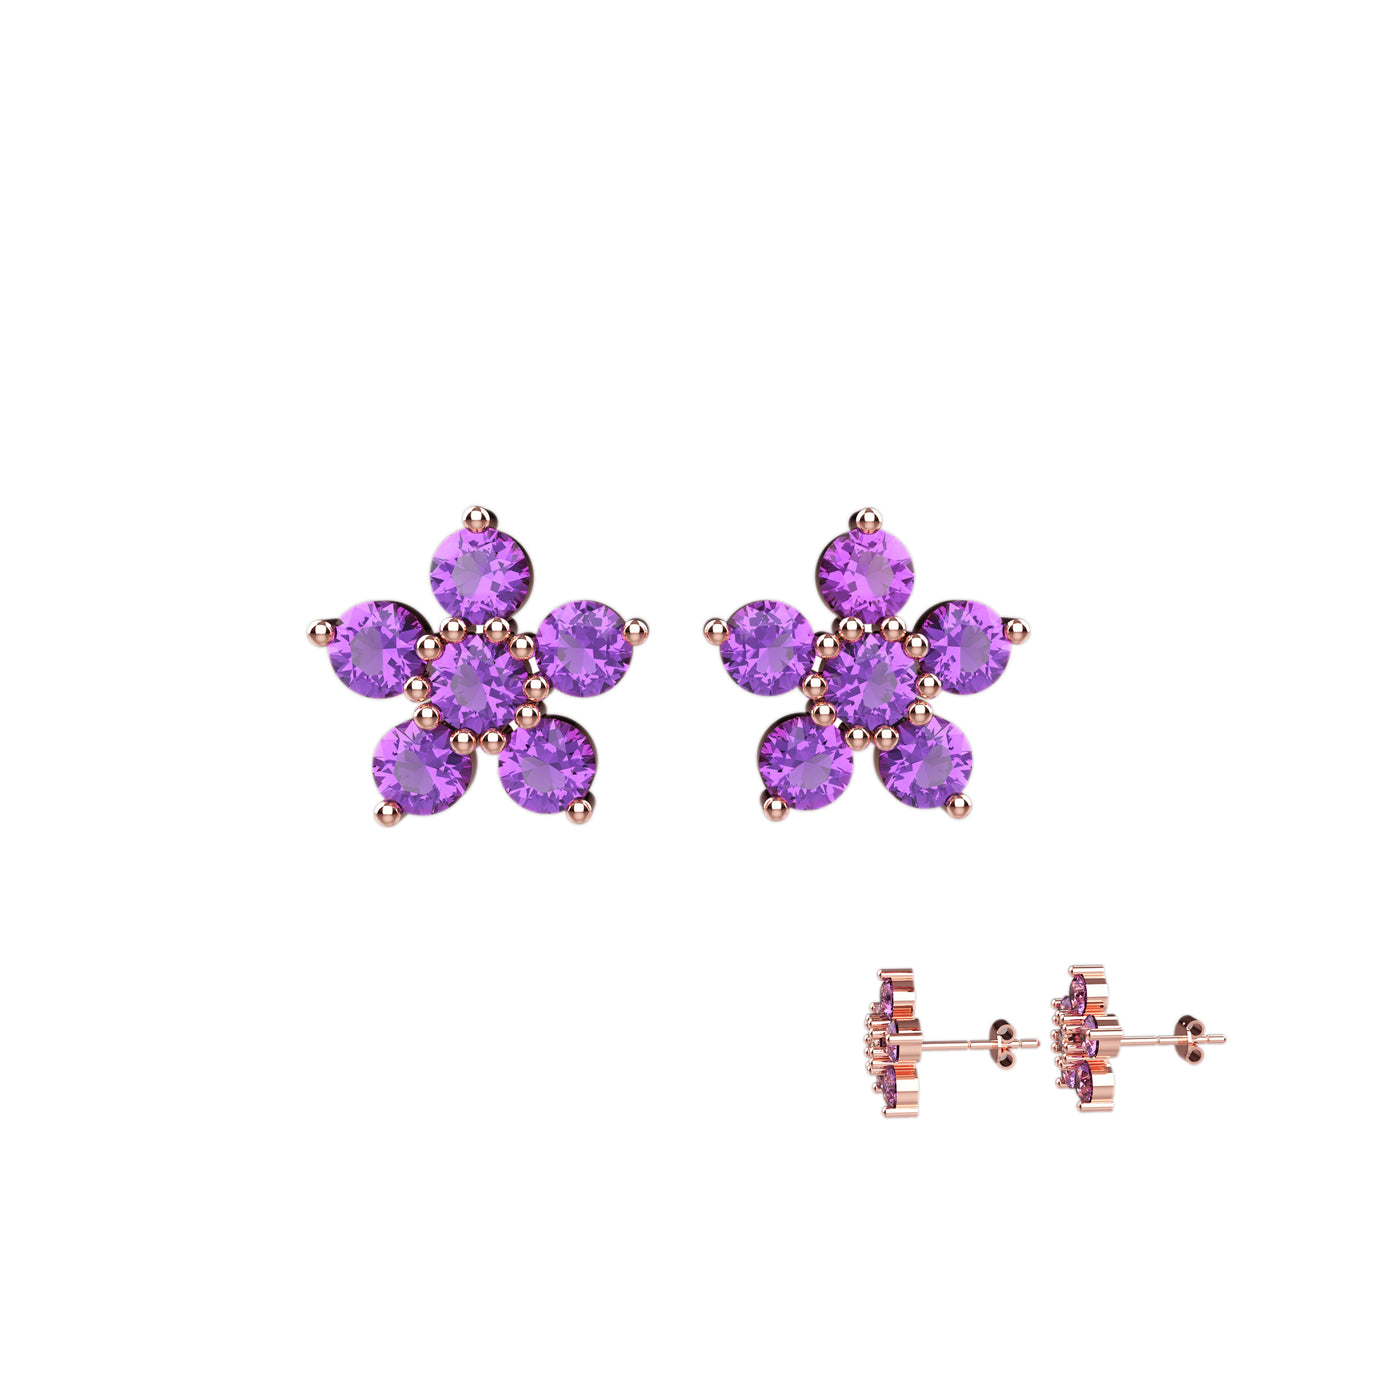 Cluster Earrings Studs Jewelry